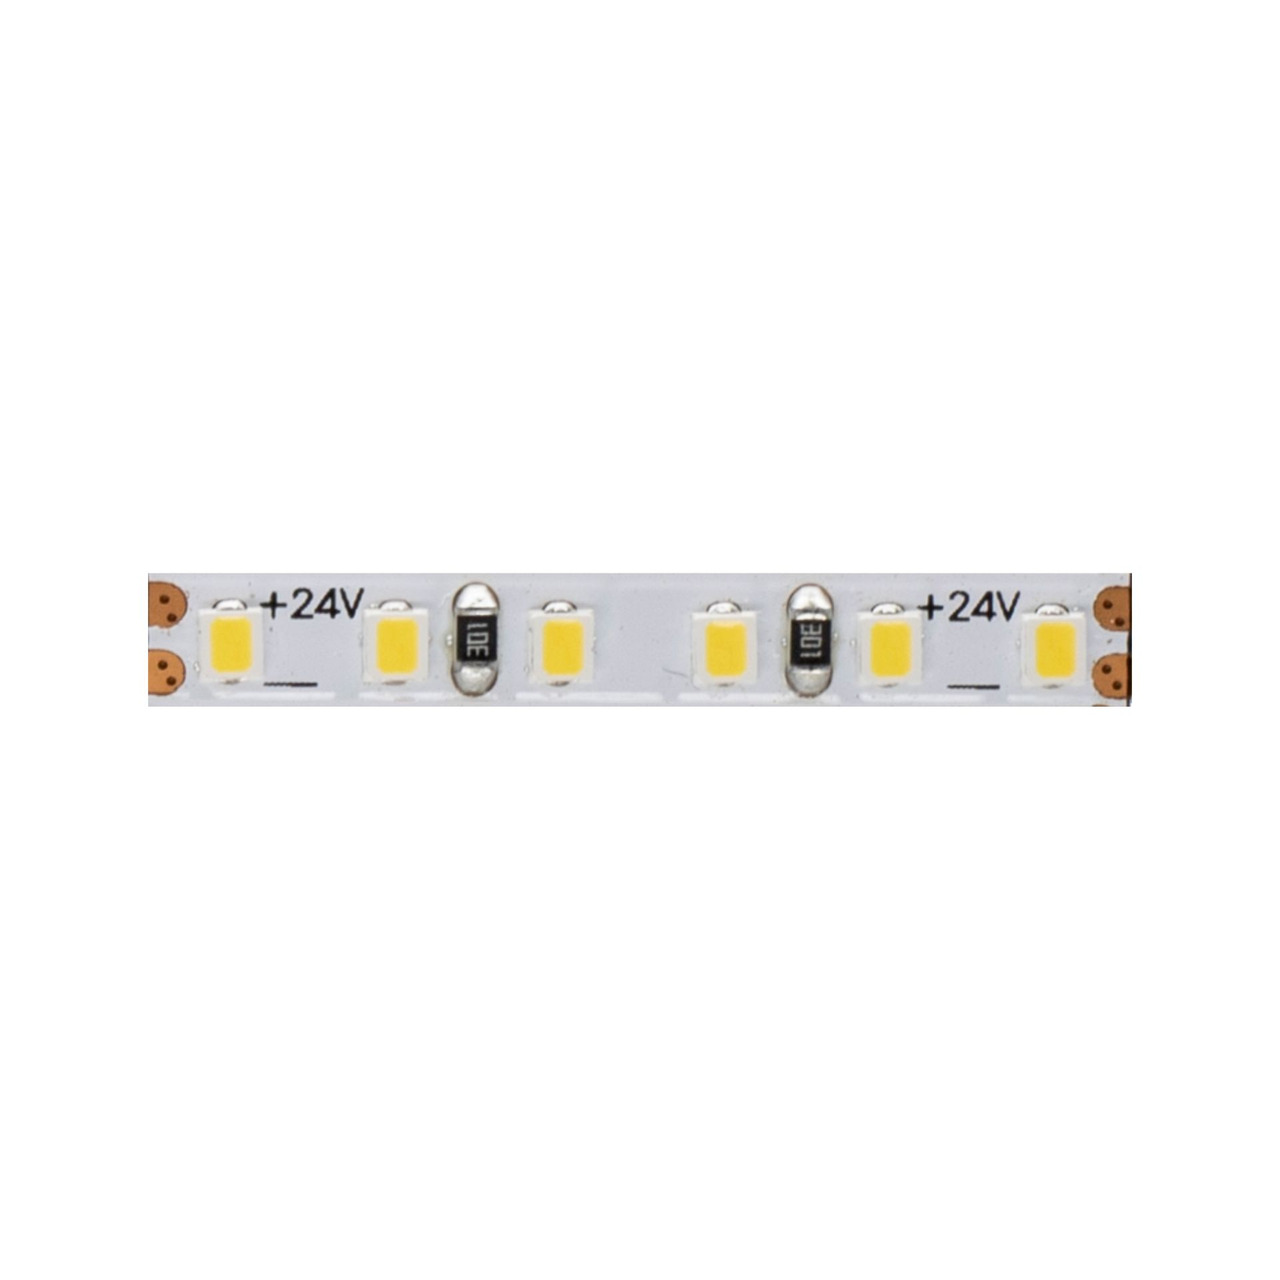 Beneito 5-m-LED-Streifen FINE-49- 50 W- 24 V DC- 2700 K- 90 Ra- 10 W-m- 710 lm-m- 204 LEDs-m- IP20